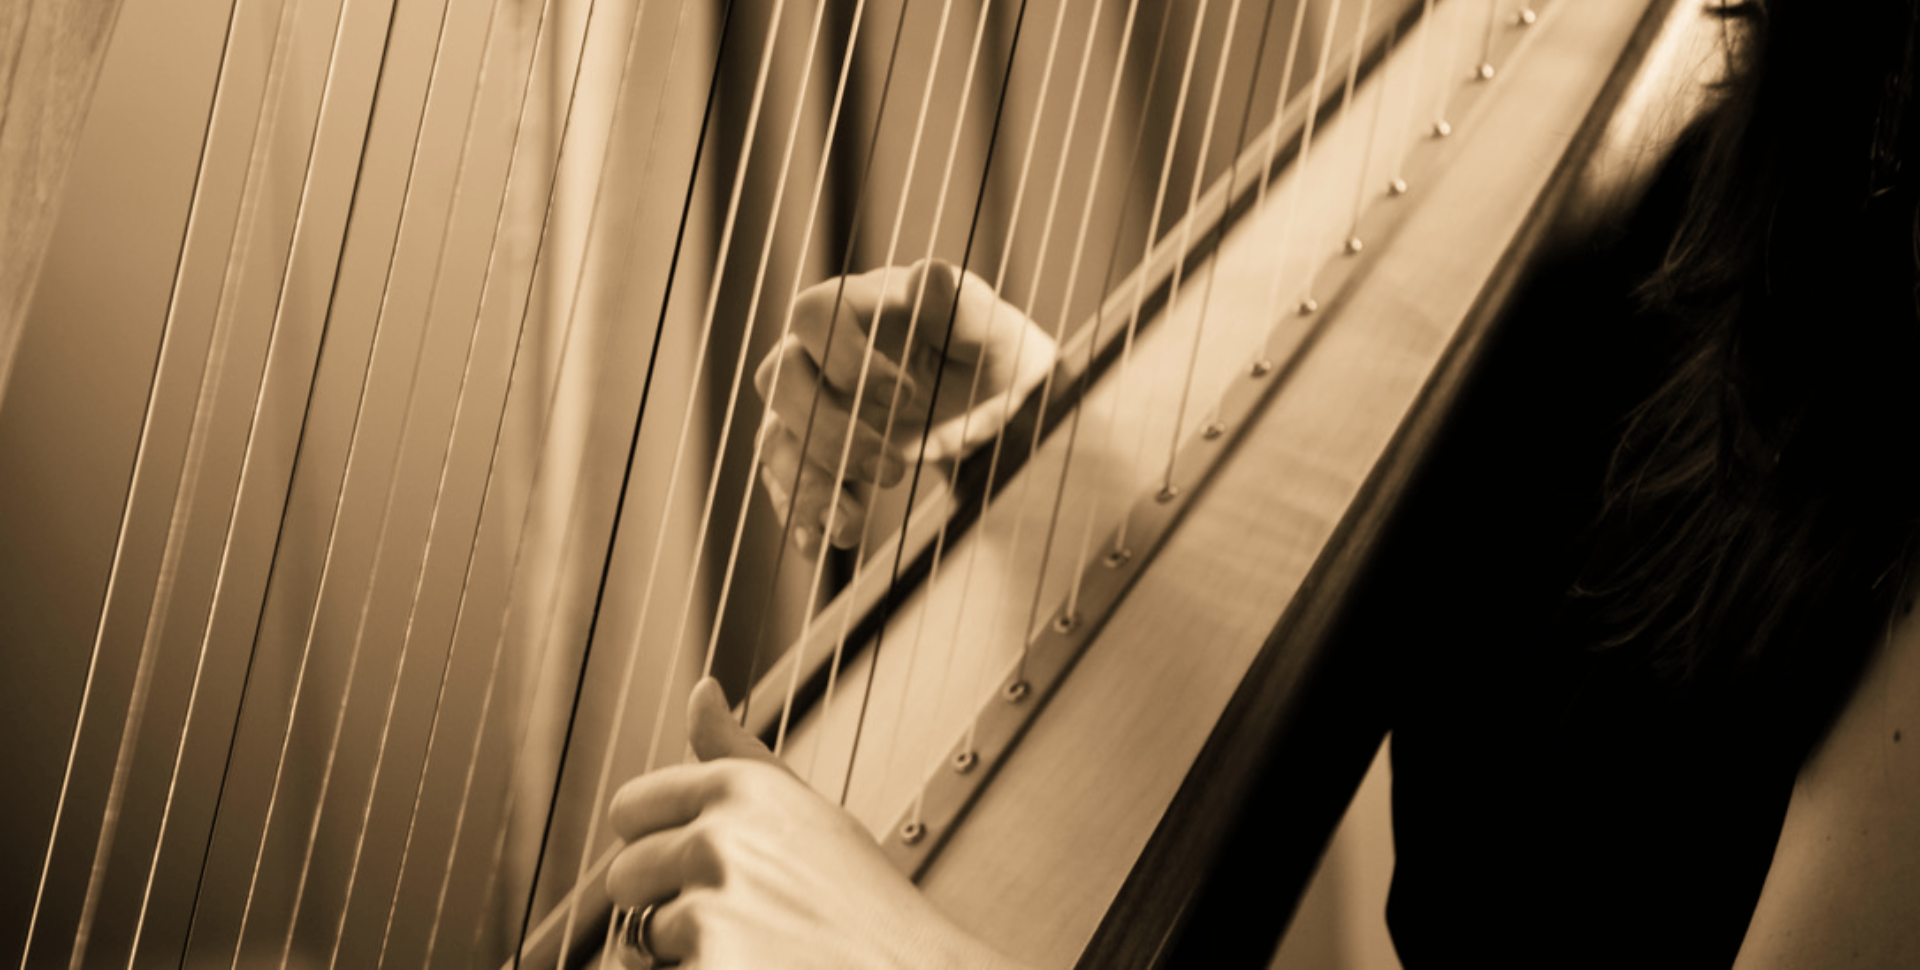 harp music for weddings